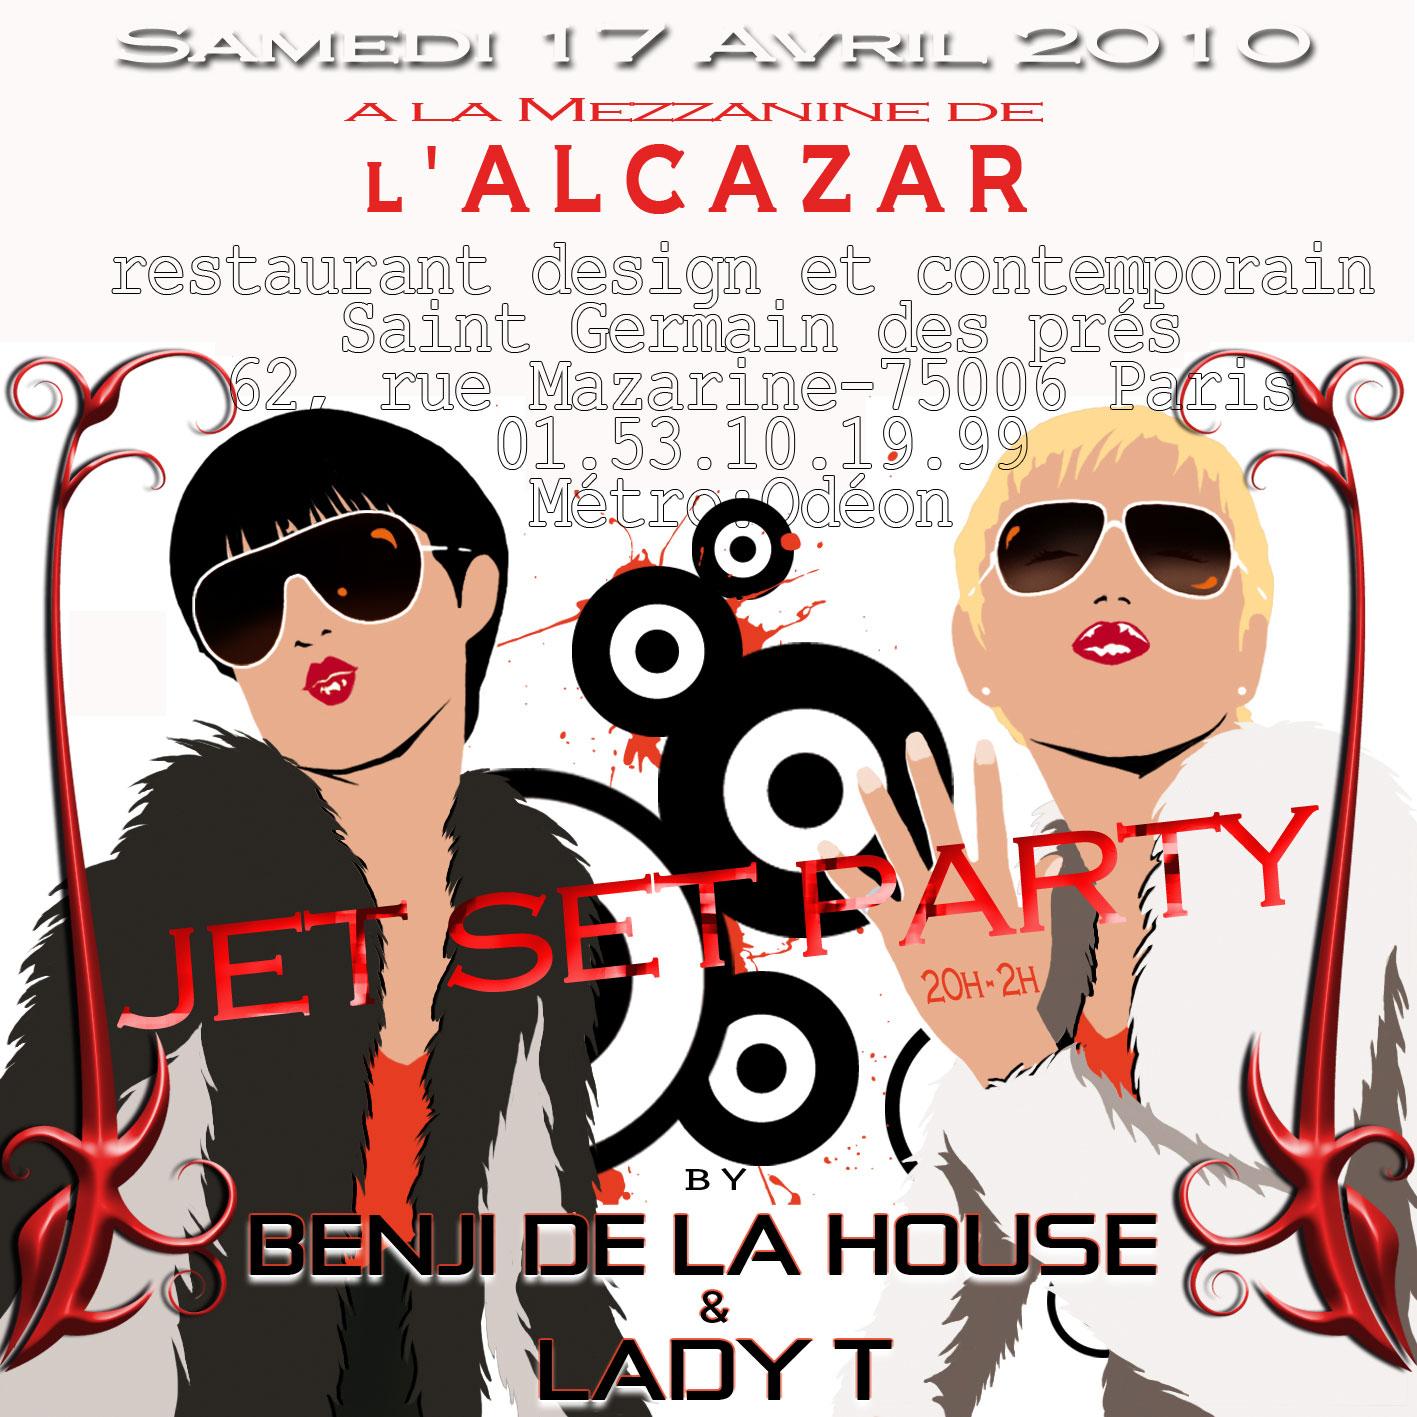 Samedi 17 avril 2010 – Jet Set Party avec Benji de la House à la Mezzanine de l’Alcazar